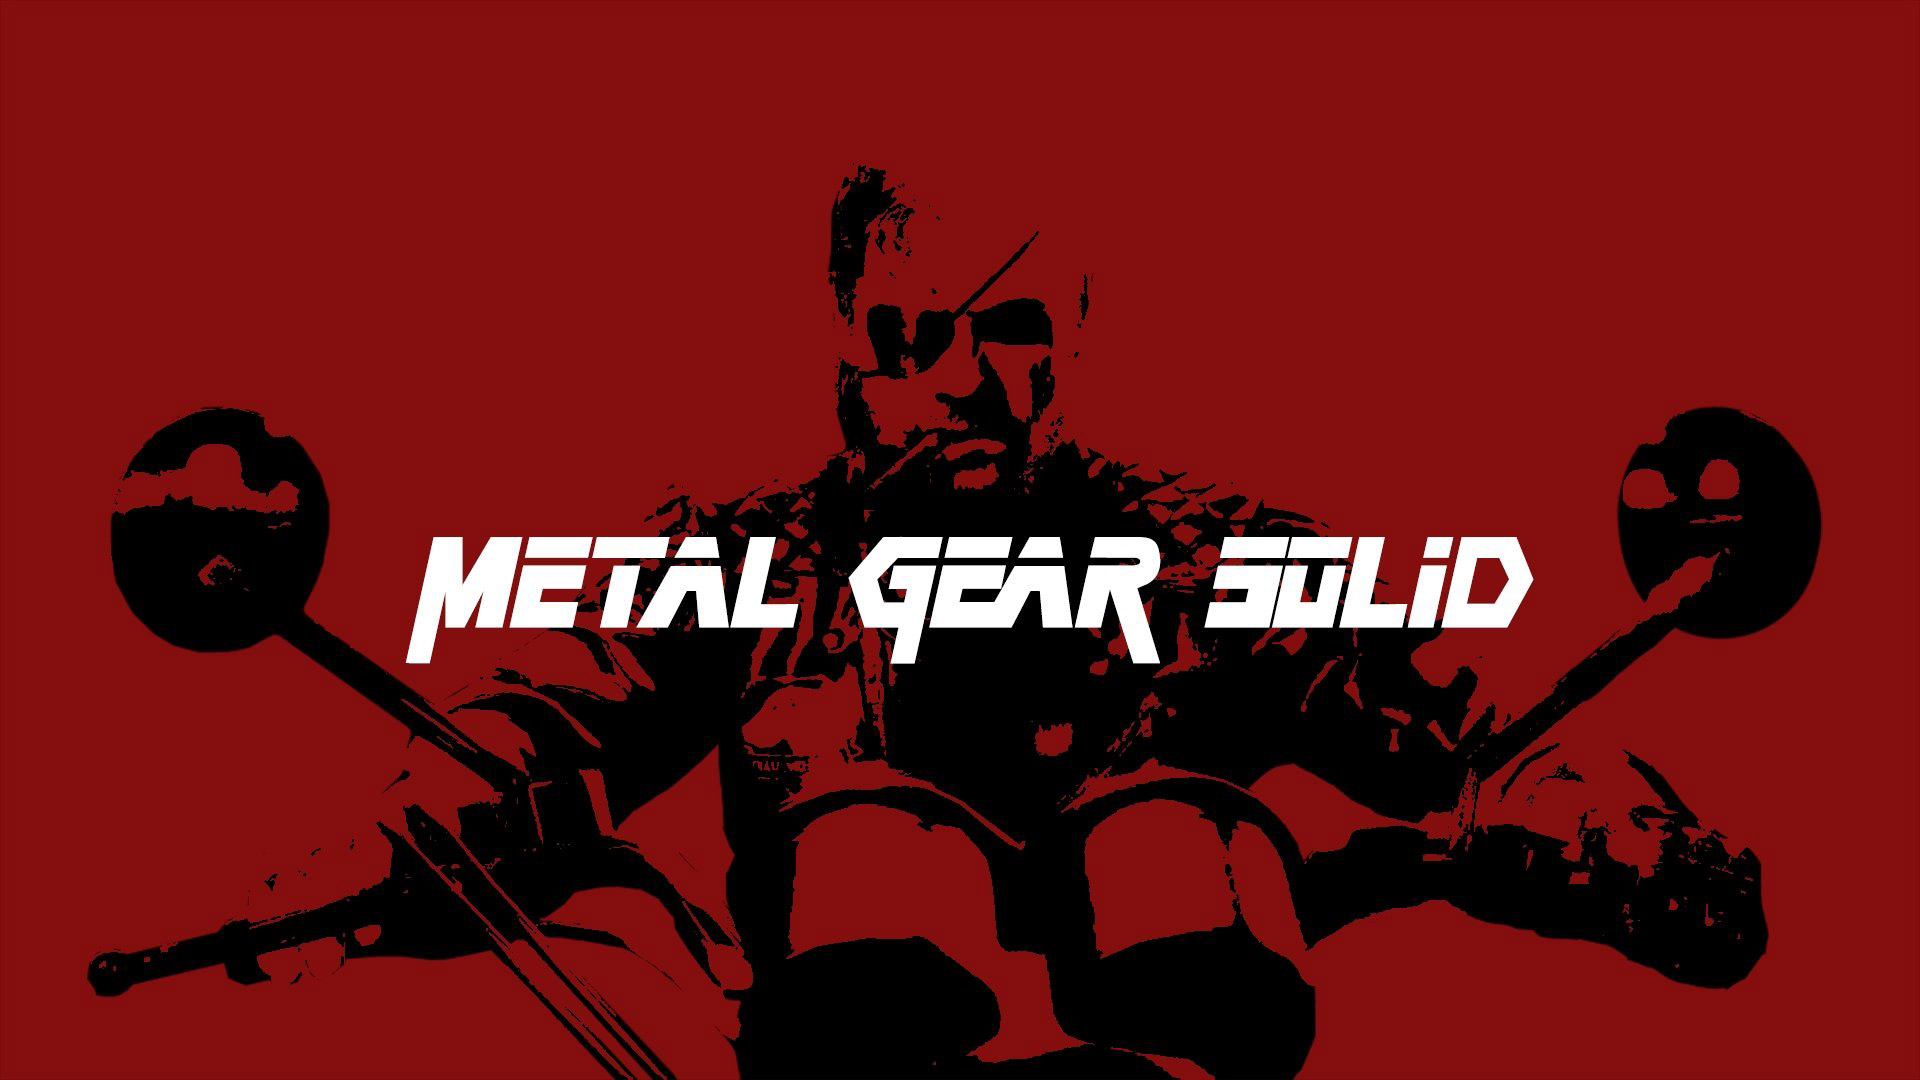 بازسازی بازی Metal Gear Solid باید چه ویژگی هایی داشته باشد؟